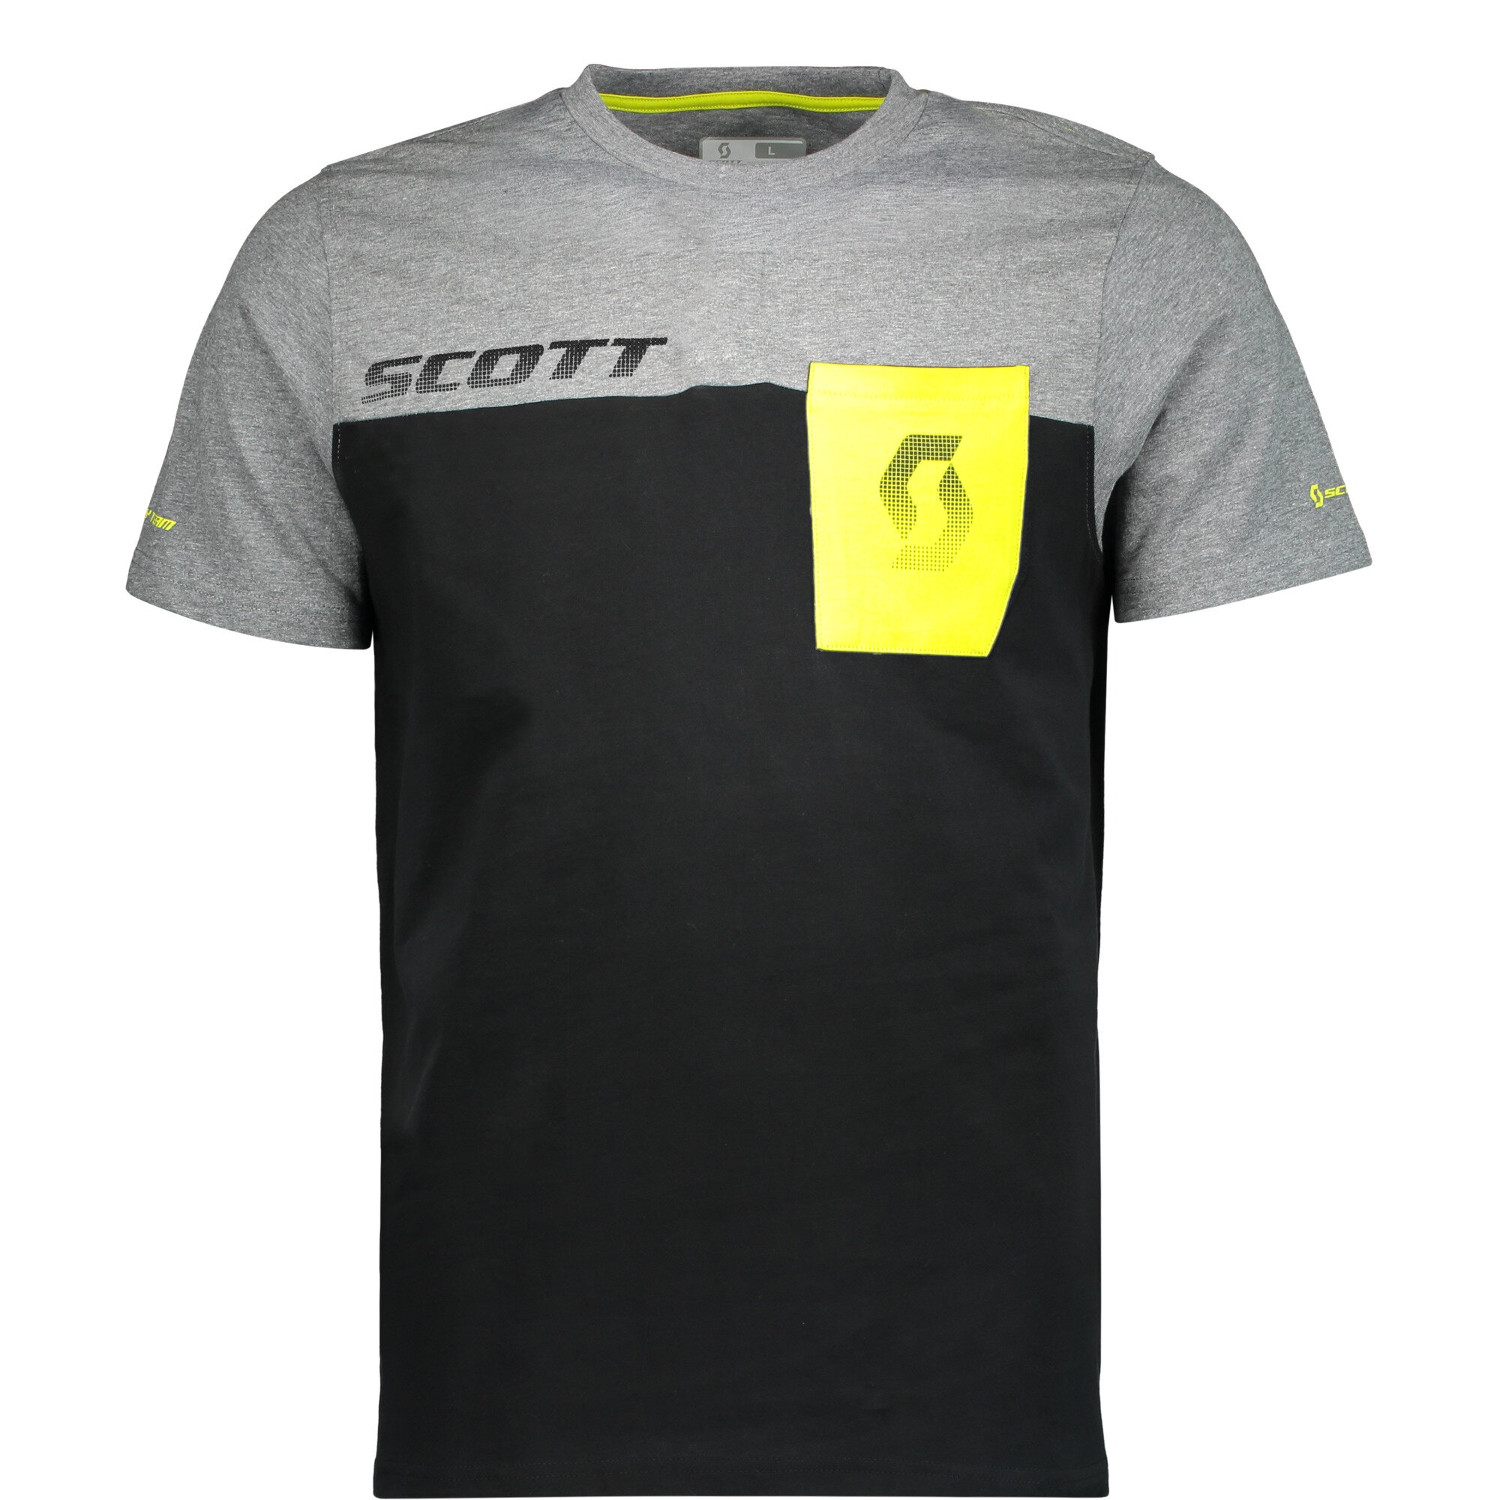 Scott T-Shirt Factory Team CO Noir/Gris foncé Melange